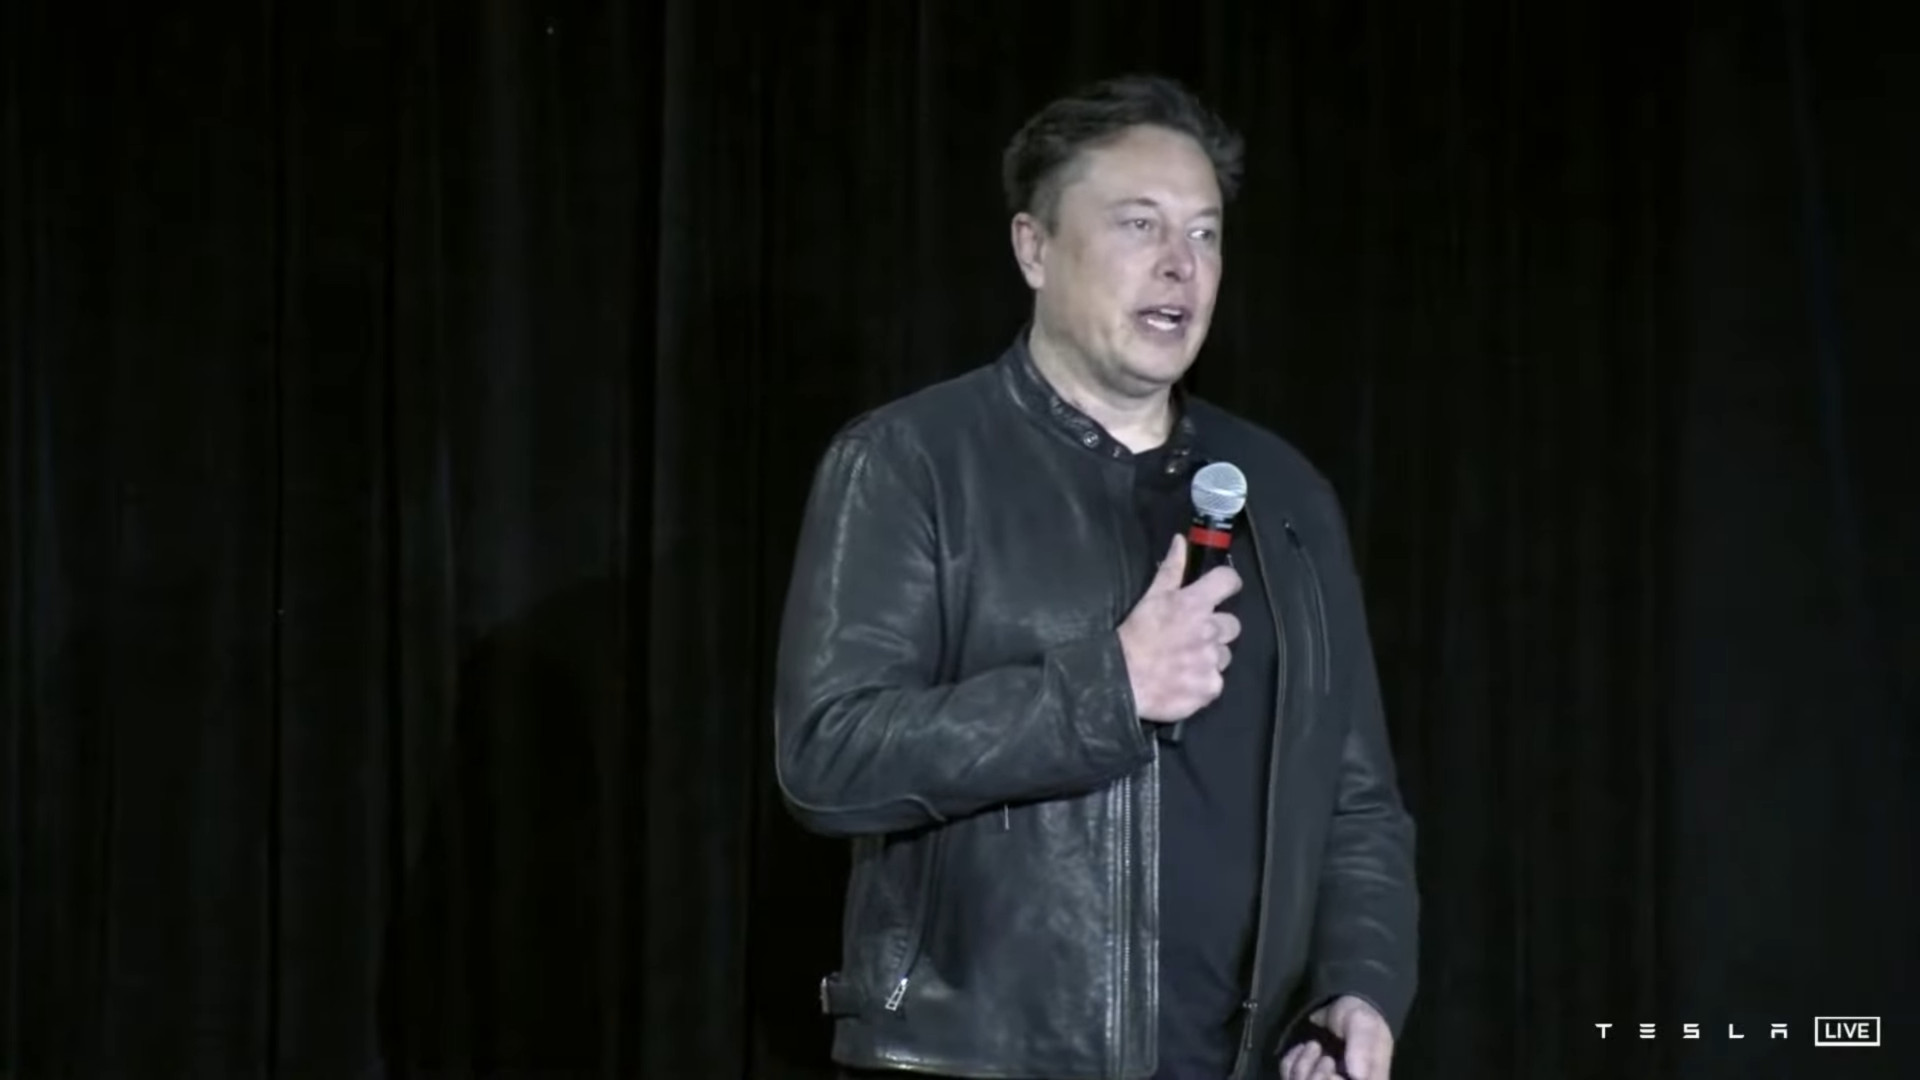 Elon Musk megteremti Optimust sajt kpmsra.